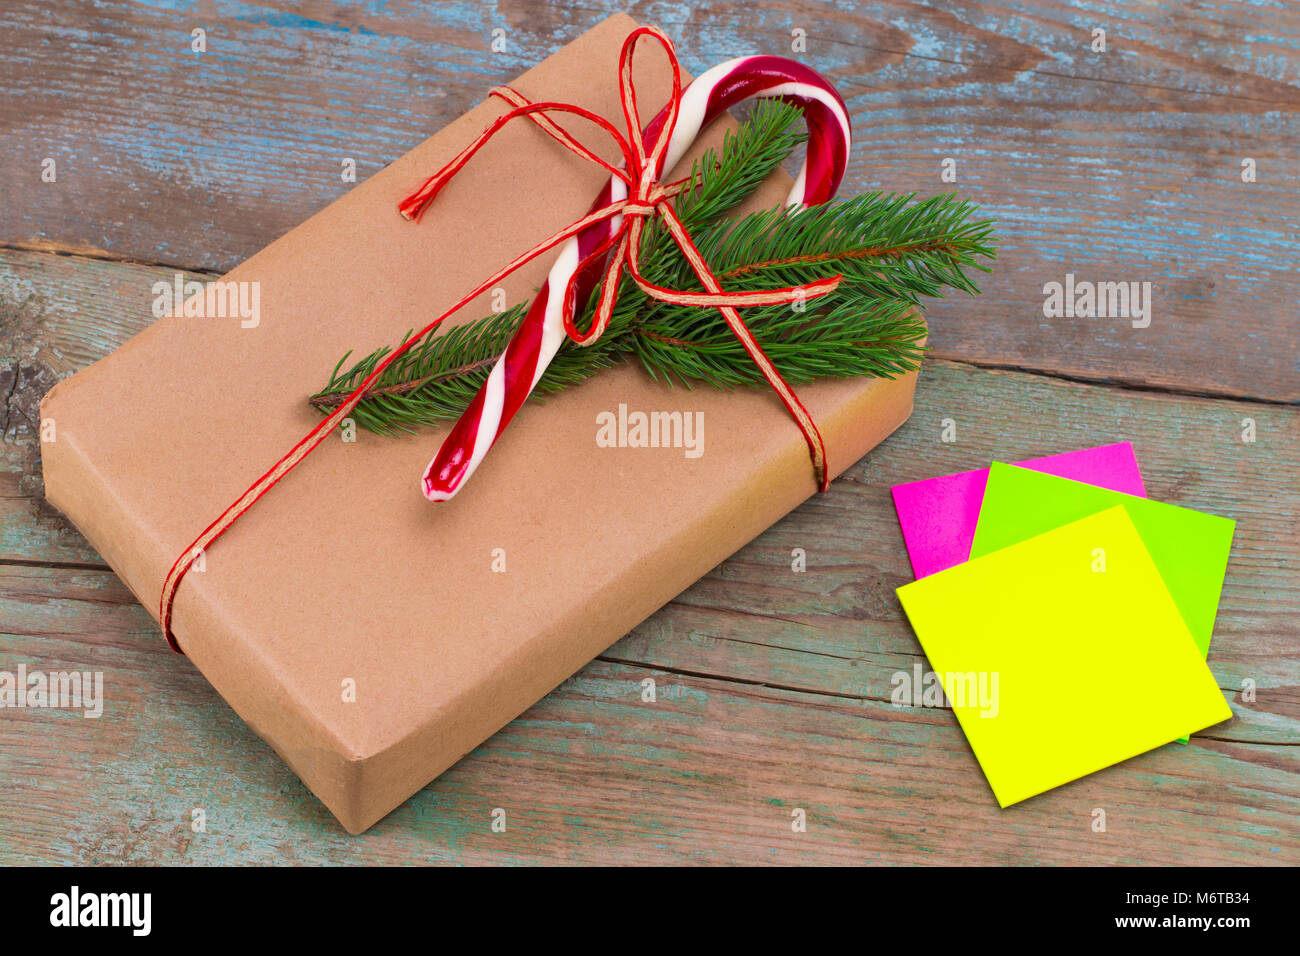 Weihnachtsdekoration. Boxen mit Weihnachten Geschenke mit haftnotiz. Schöne Verpackung. Vintage Geschenkbox auf Holz- Hintergrund. Handgefertigt. Stockfoto